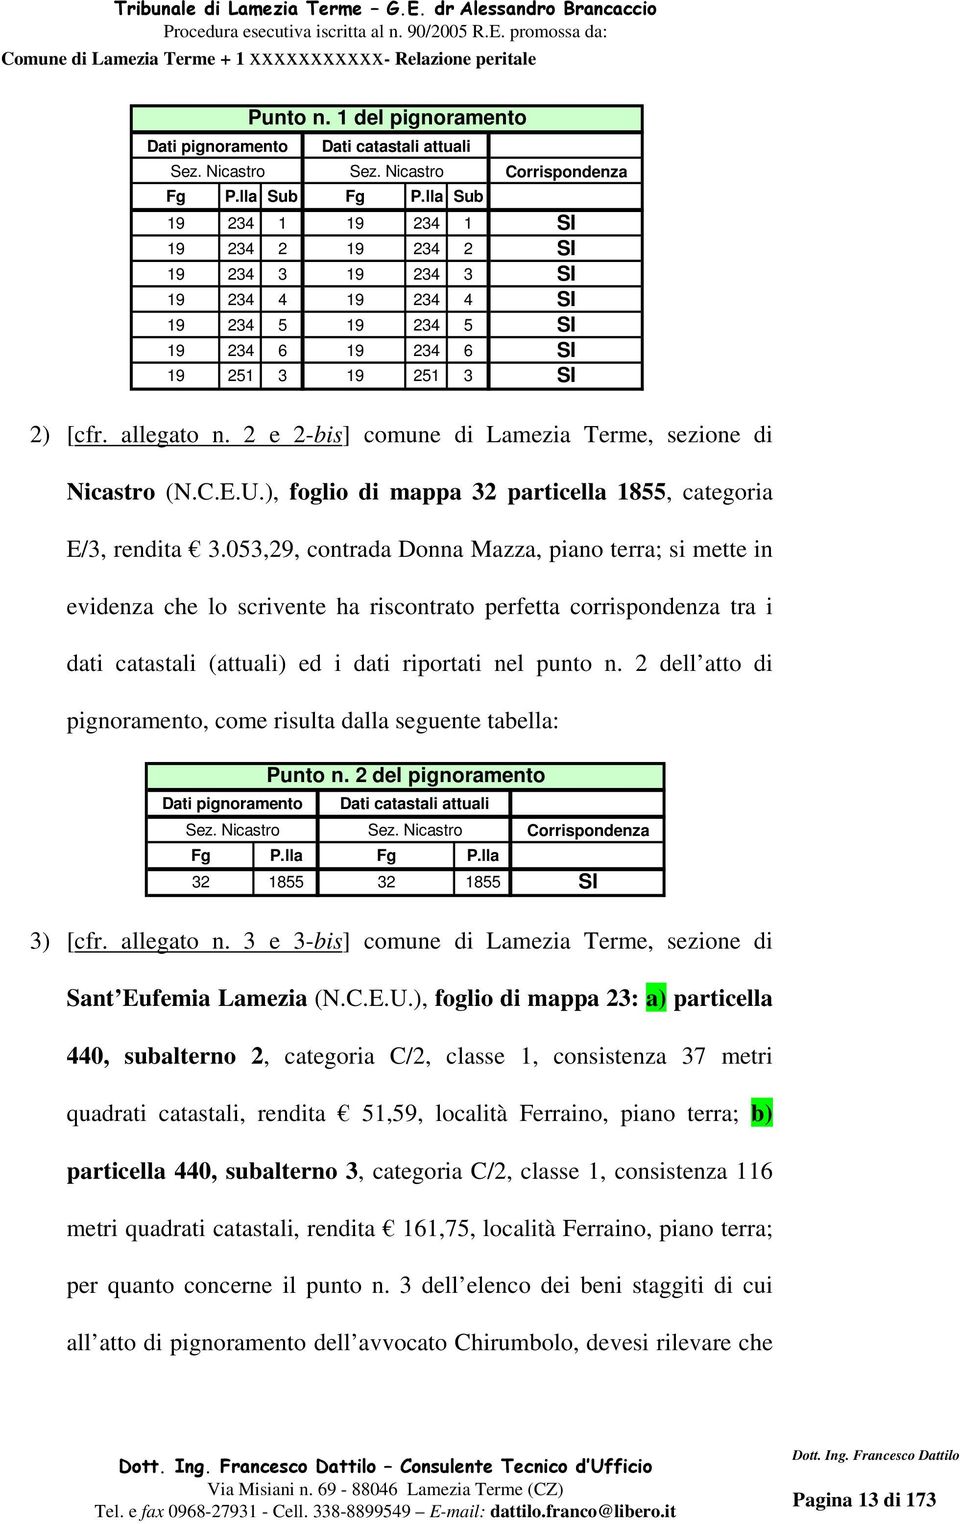 2 e 2-bis] comune di Lamezia Terme, sezione di Nicastro (N.C.E.U.), foglio di mappa 32 particella 1855, categoria E/3, rendita 3.